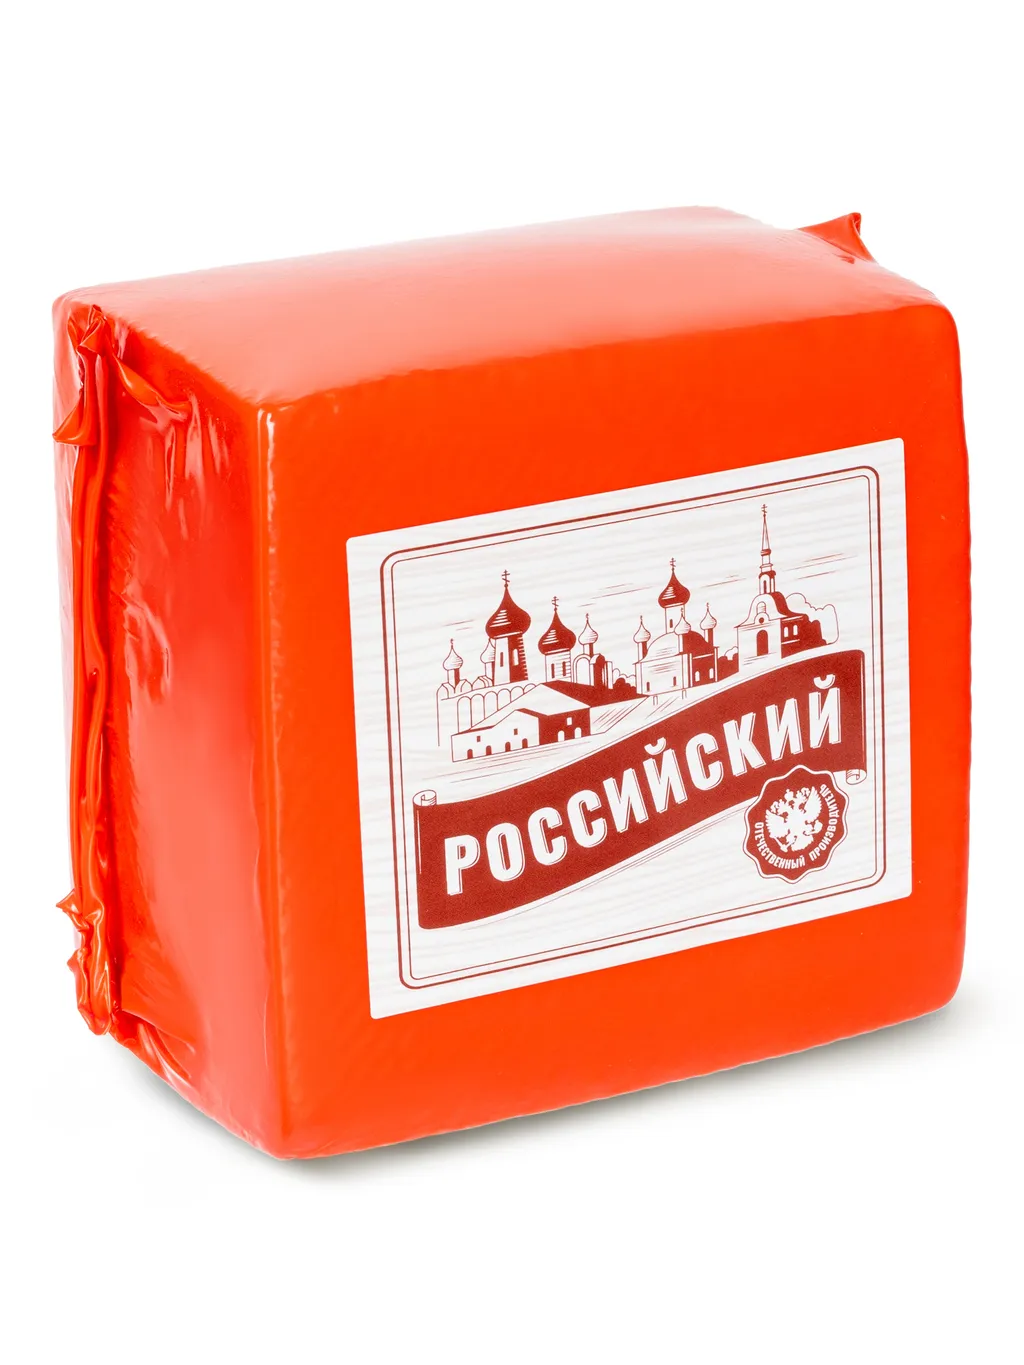 сыр, сырный продукт в Москве и Московской области 2